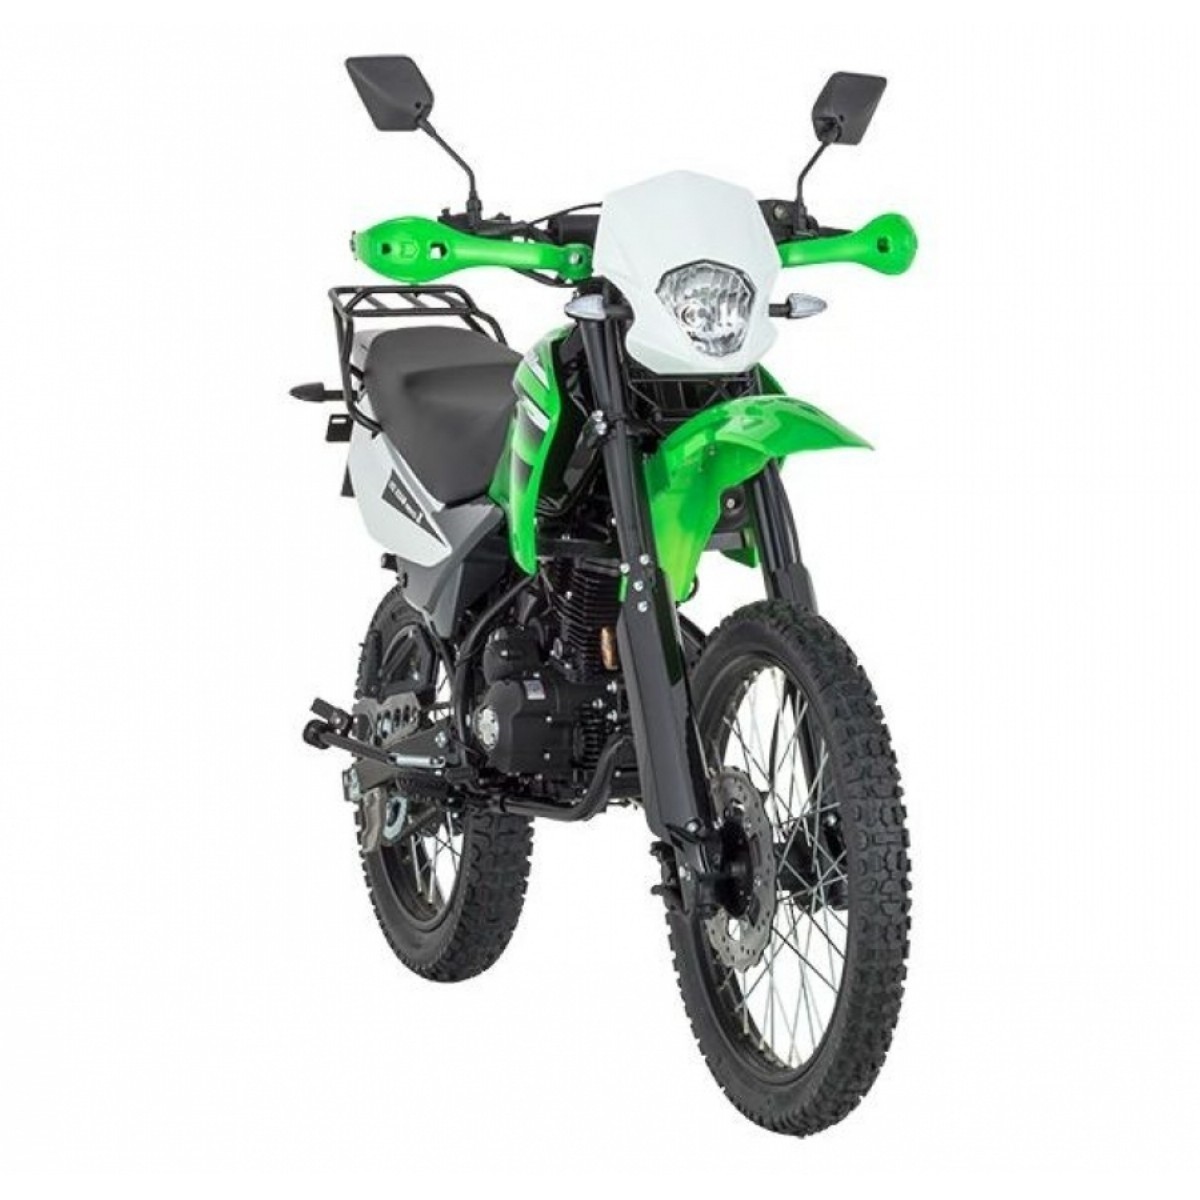 Motosikletler | Mondial X-treme Max 200i Motosiklet | M3MON1040B0001 | Mondial X-treme Max 200i Motosiklet, mondial cross motor, mondial cros motorsiklet | 